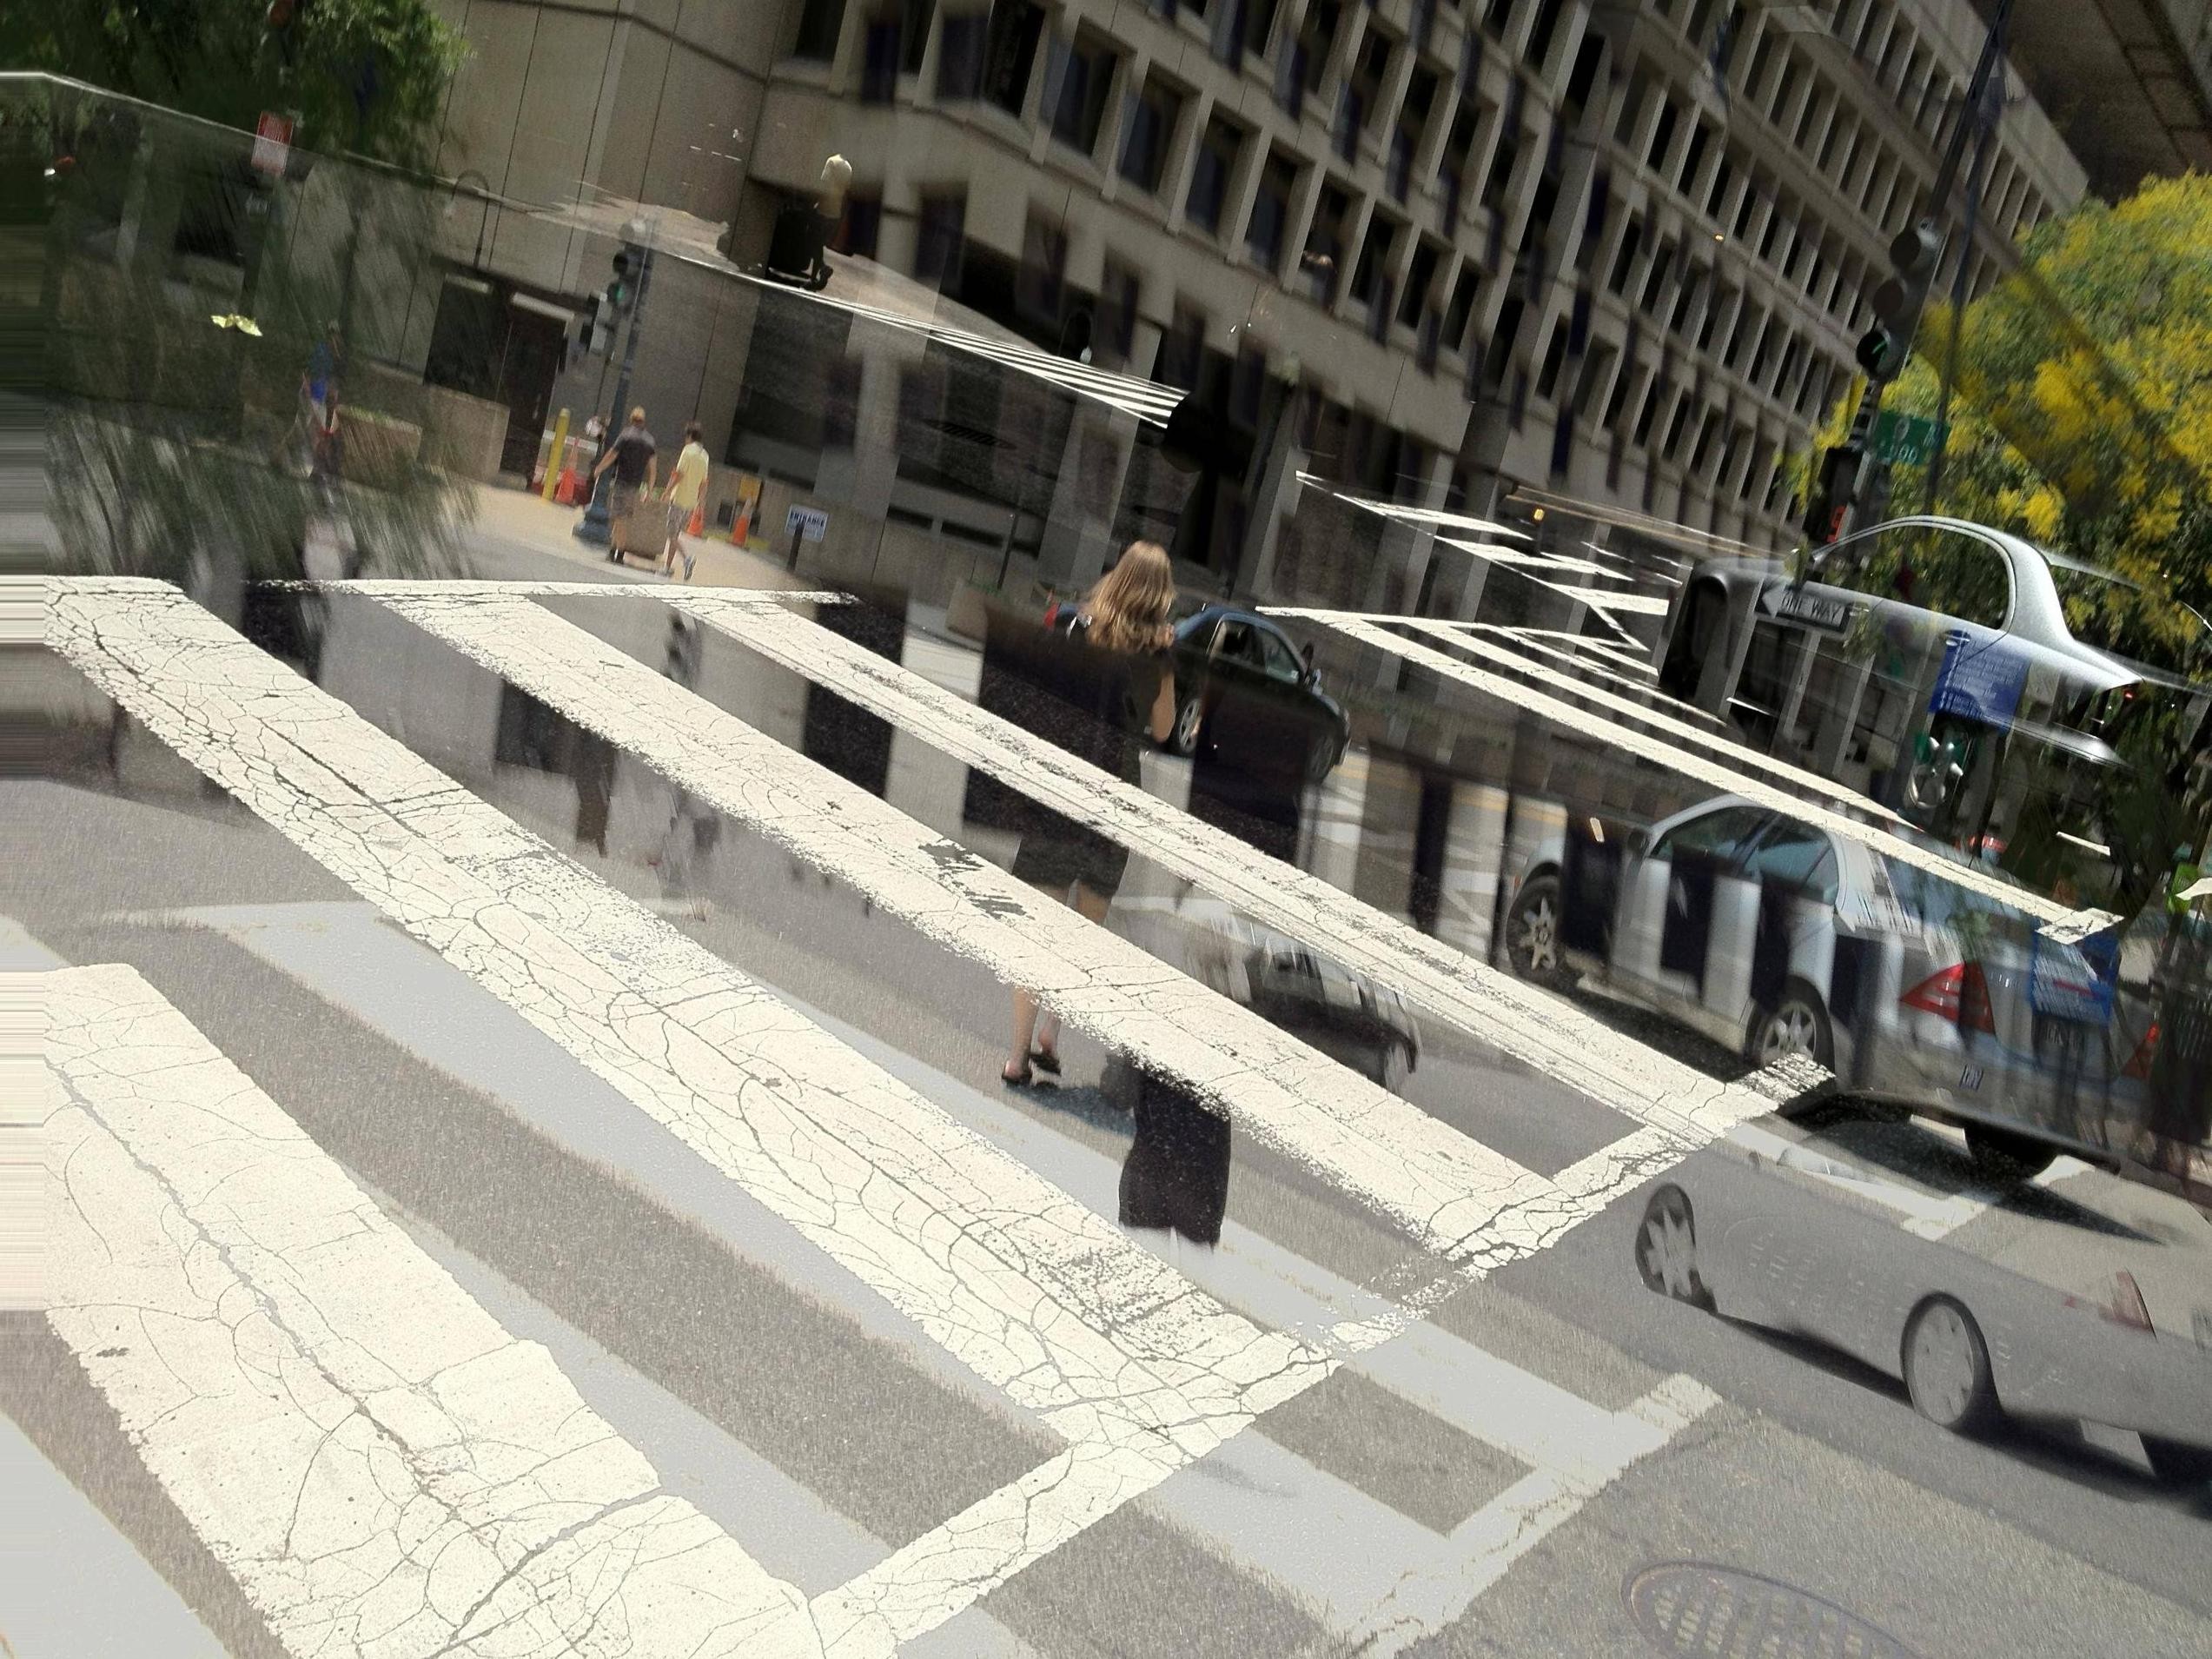 Glitch Art Intersections City Pedestrian Digital Art 2546x1909